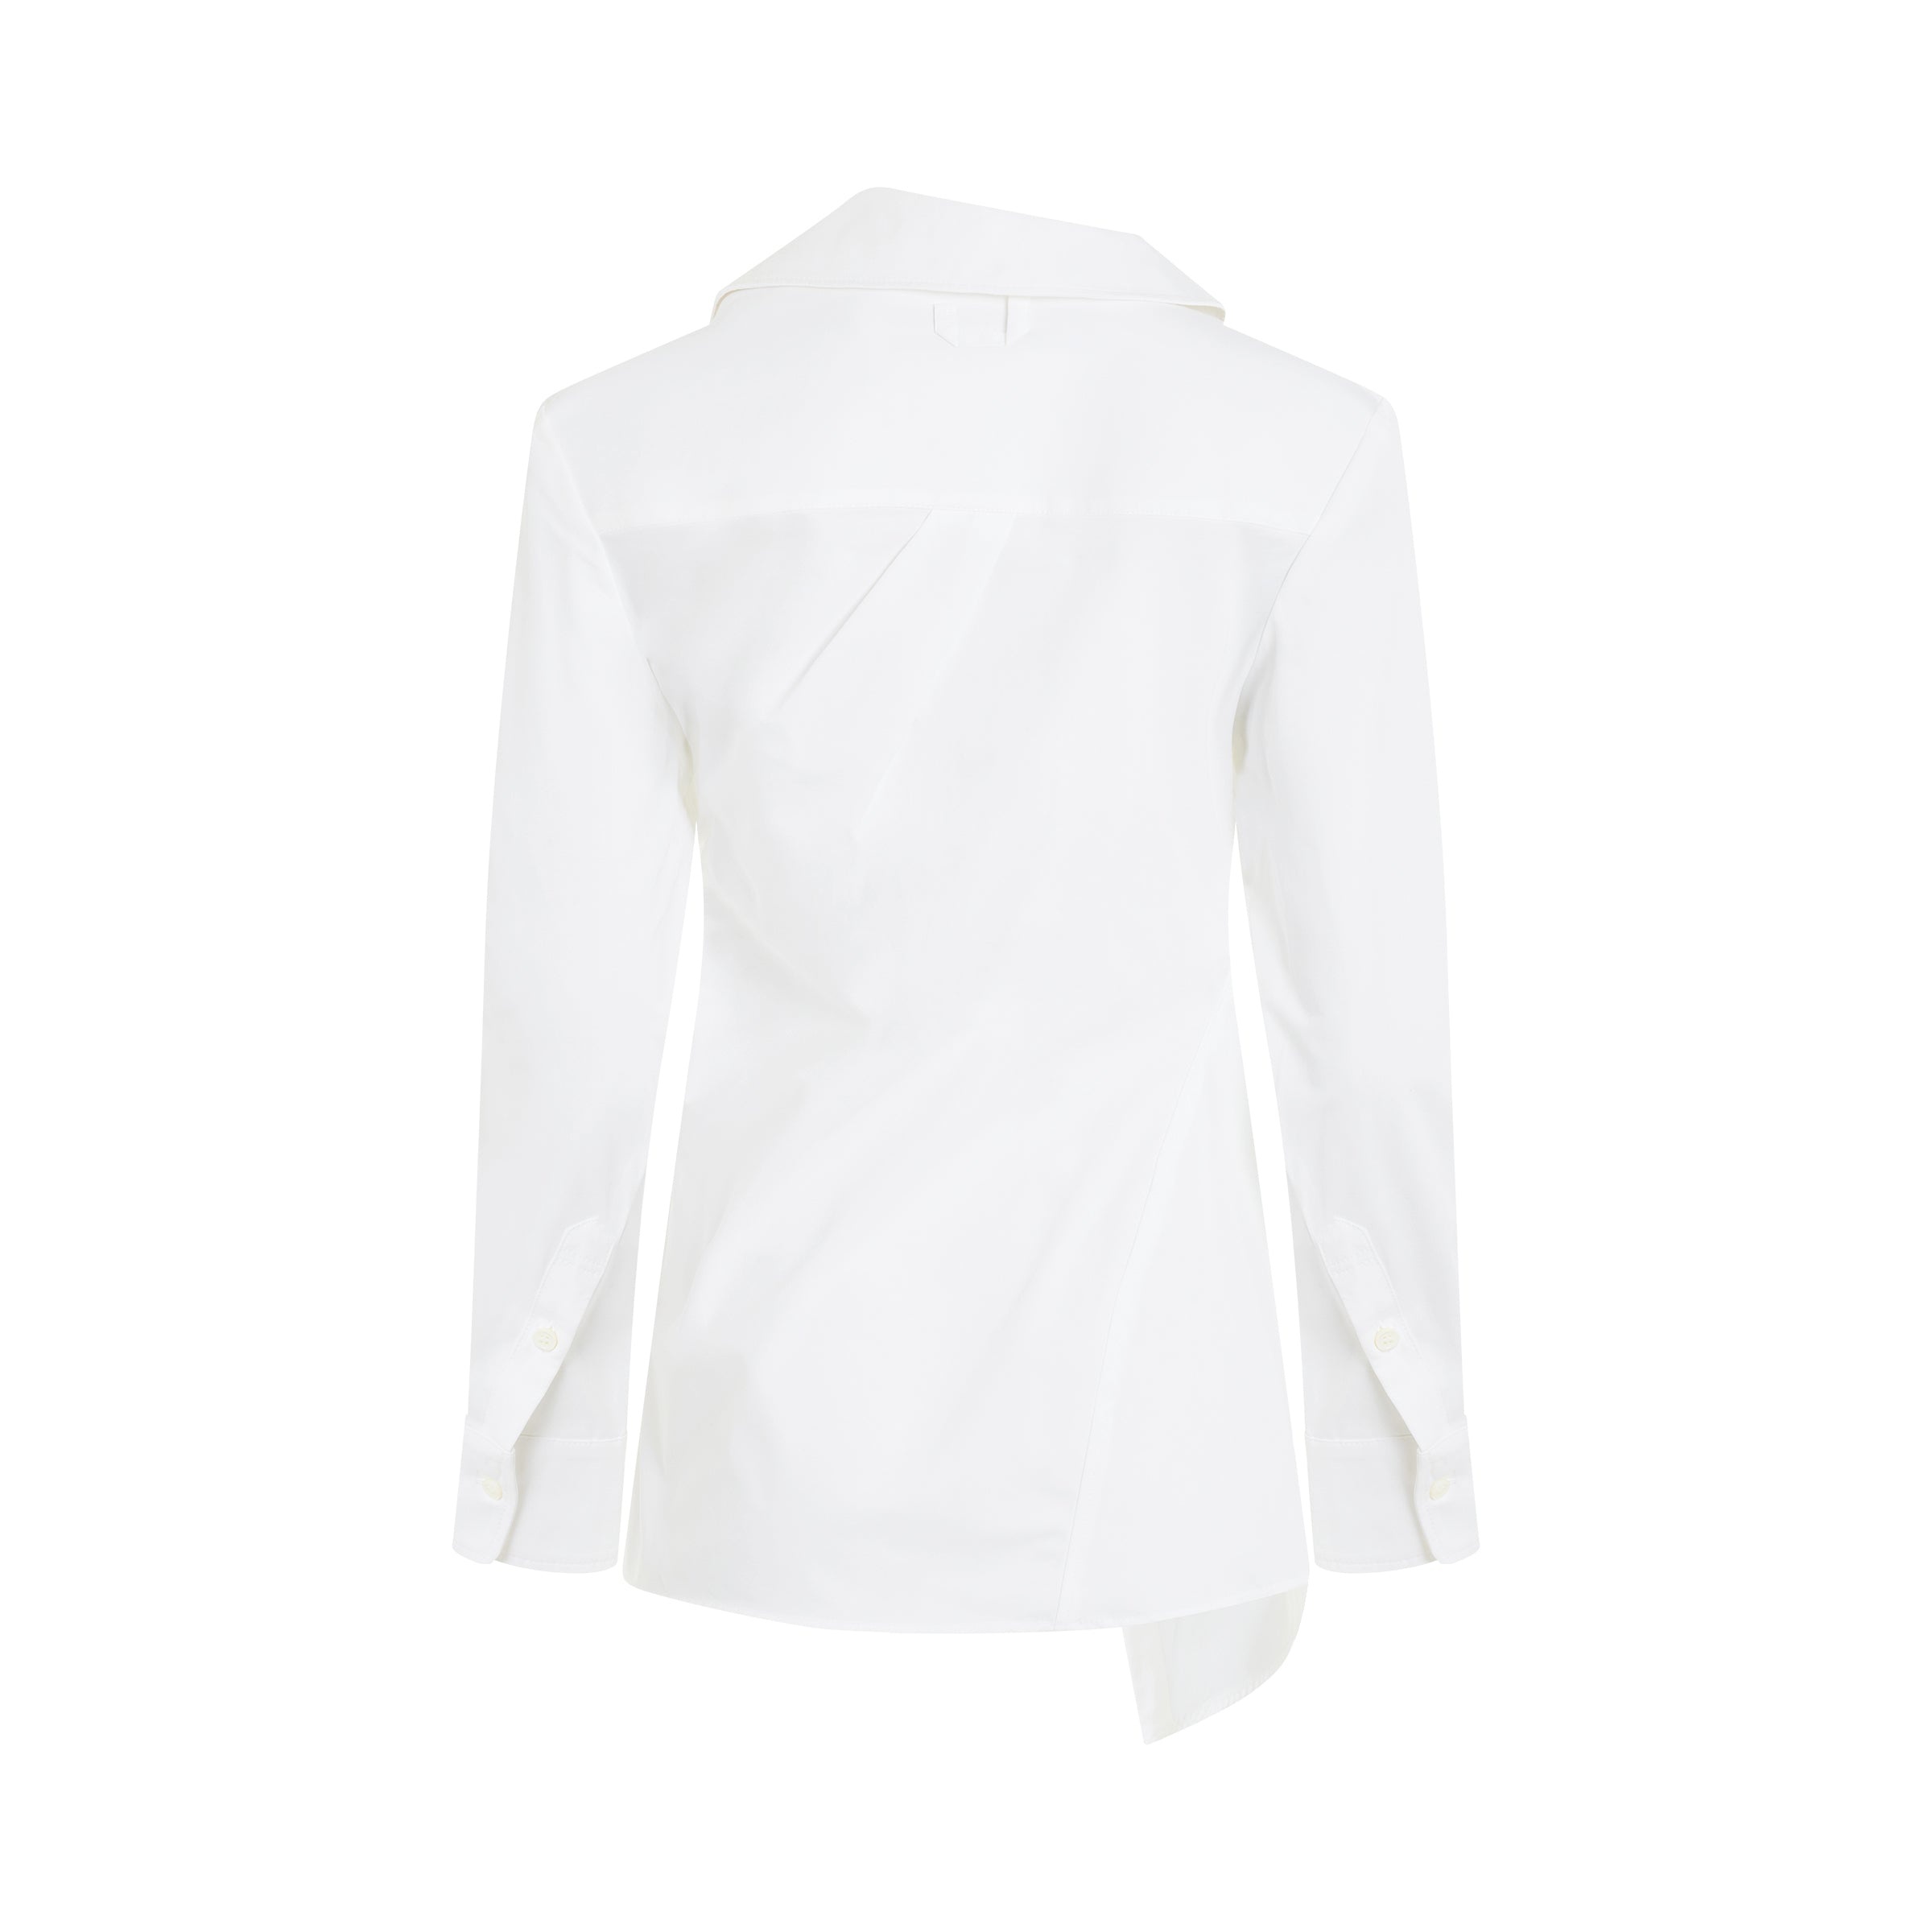 Pablo Asymmetric Shirt in White - 4